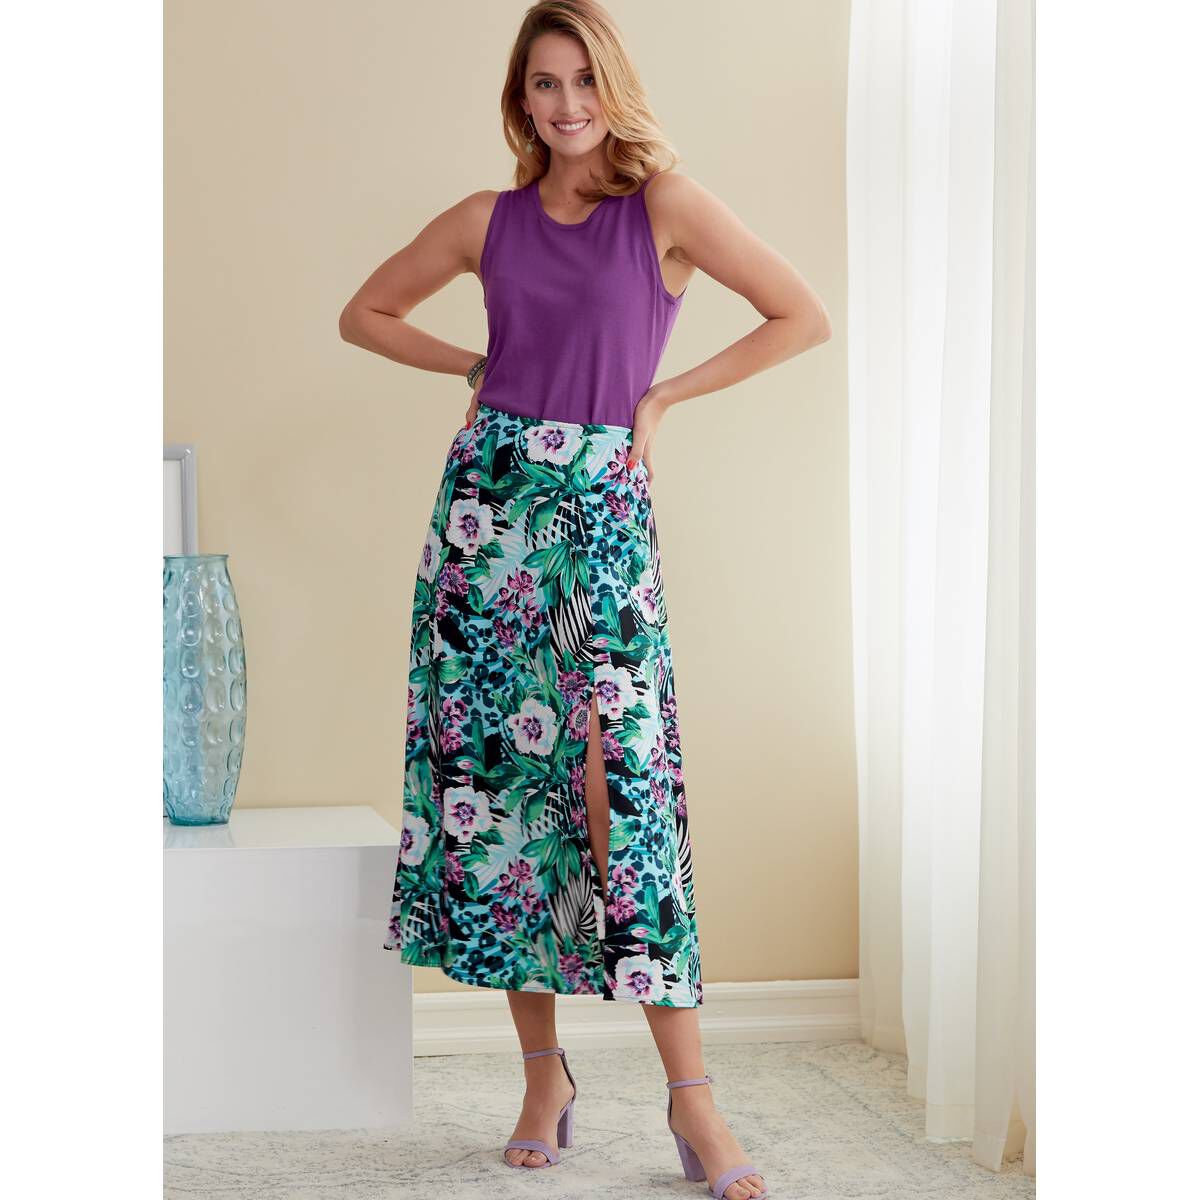 Butterick Women’s Skirt Sewing Pattern B6772 (6-14) | Hobbycraft